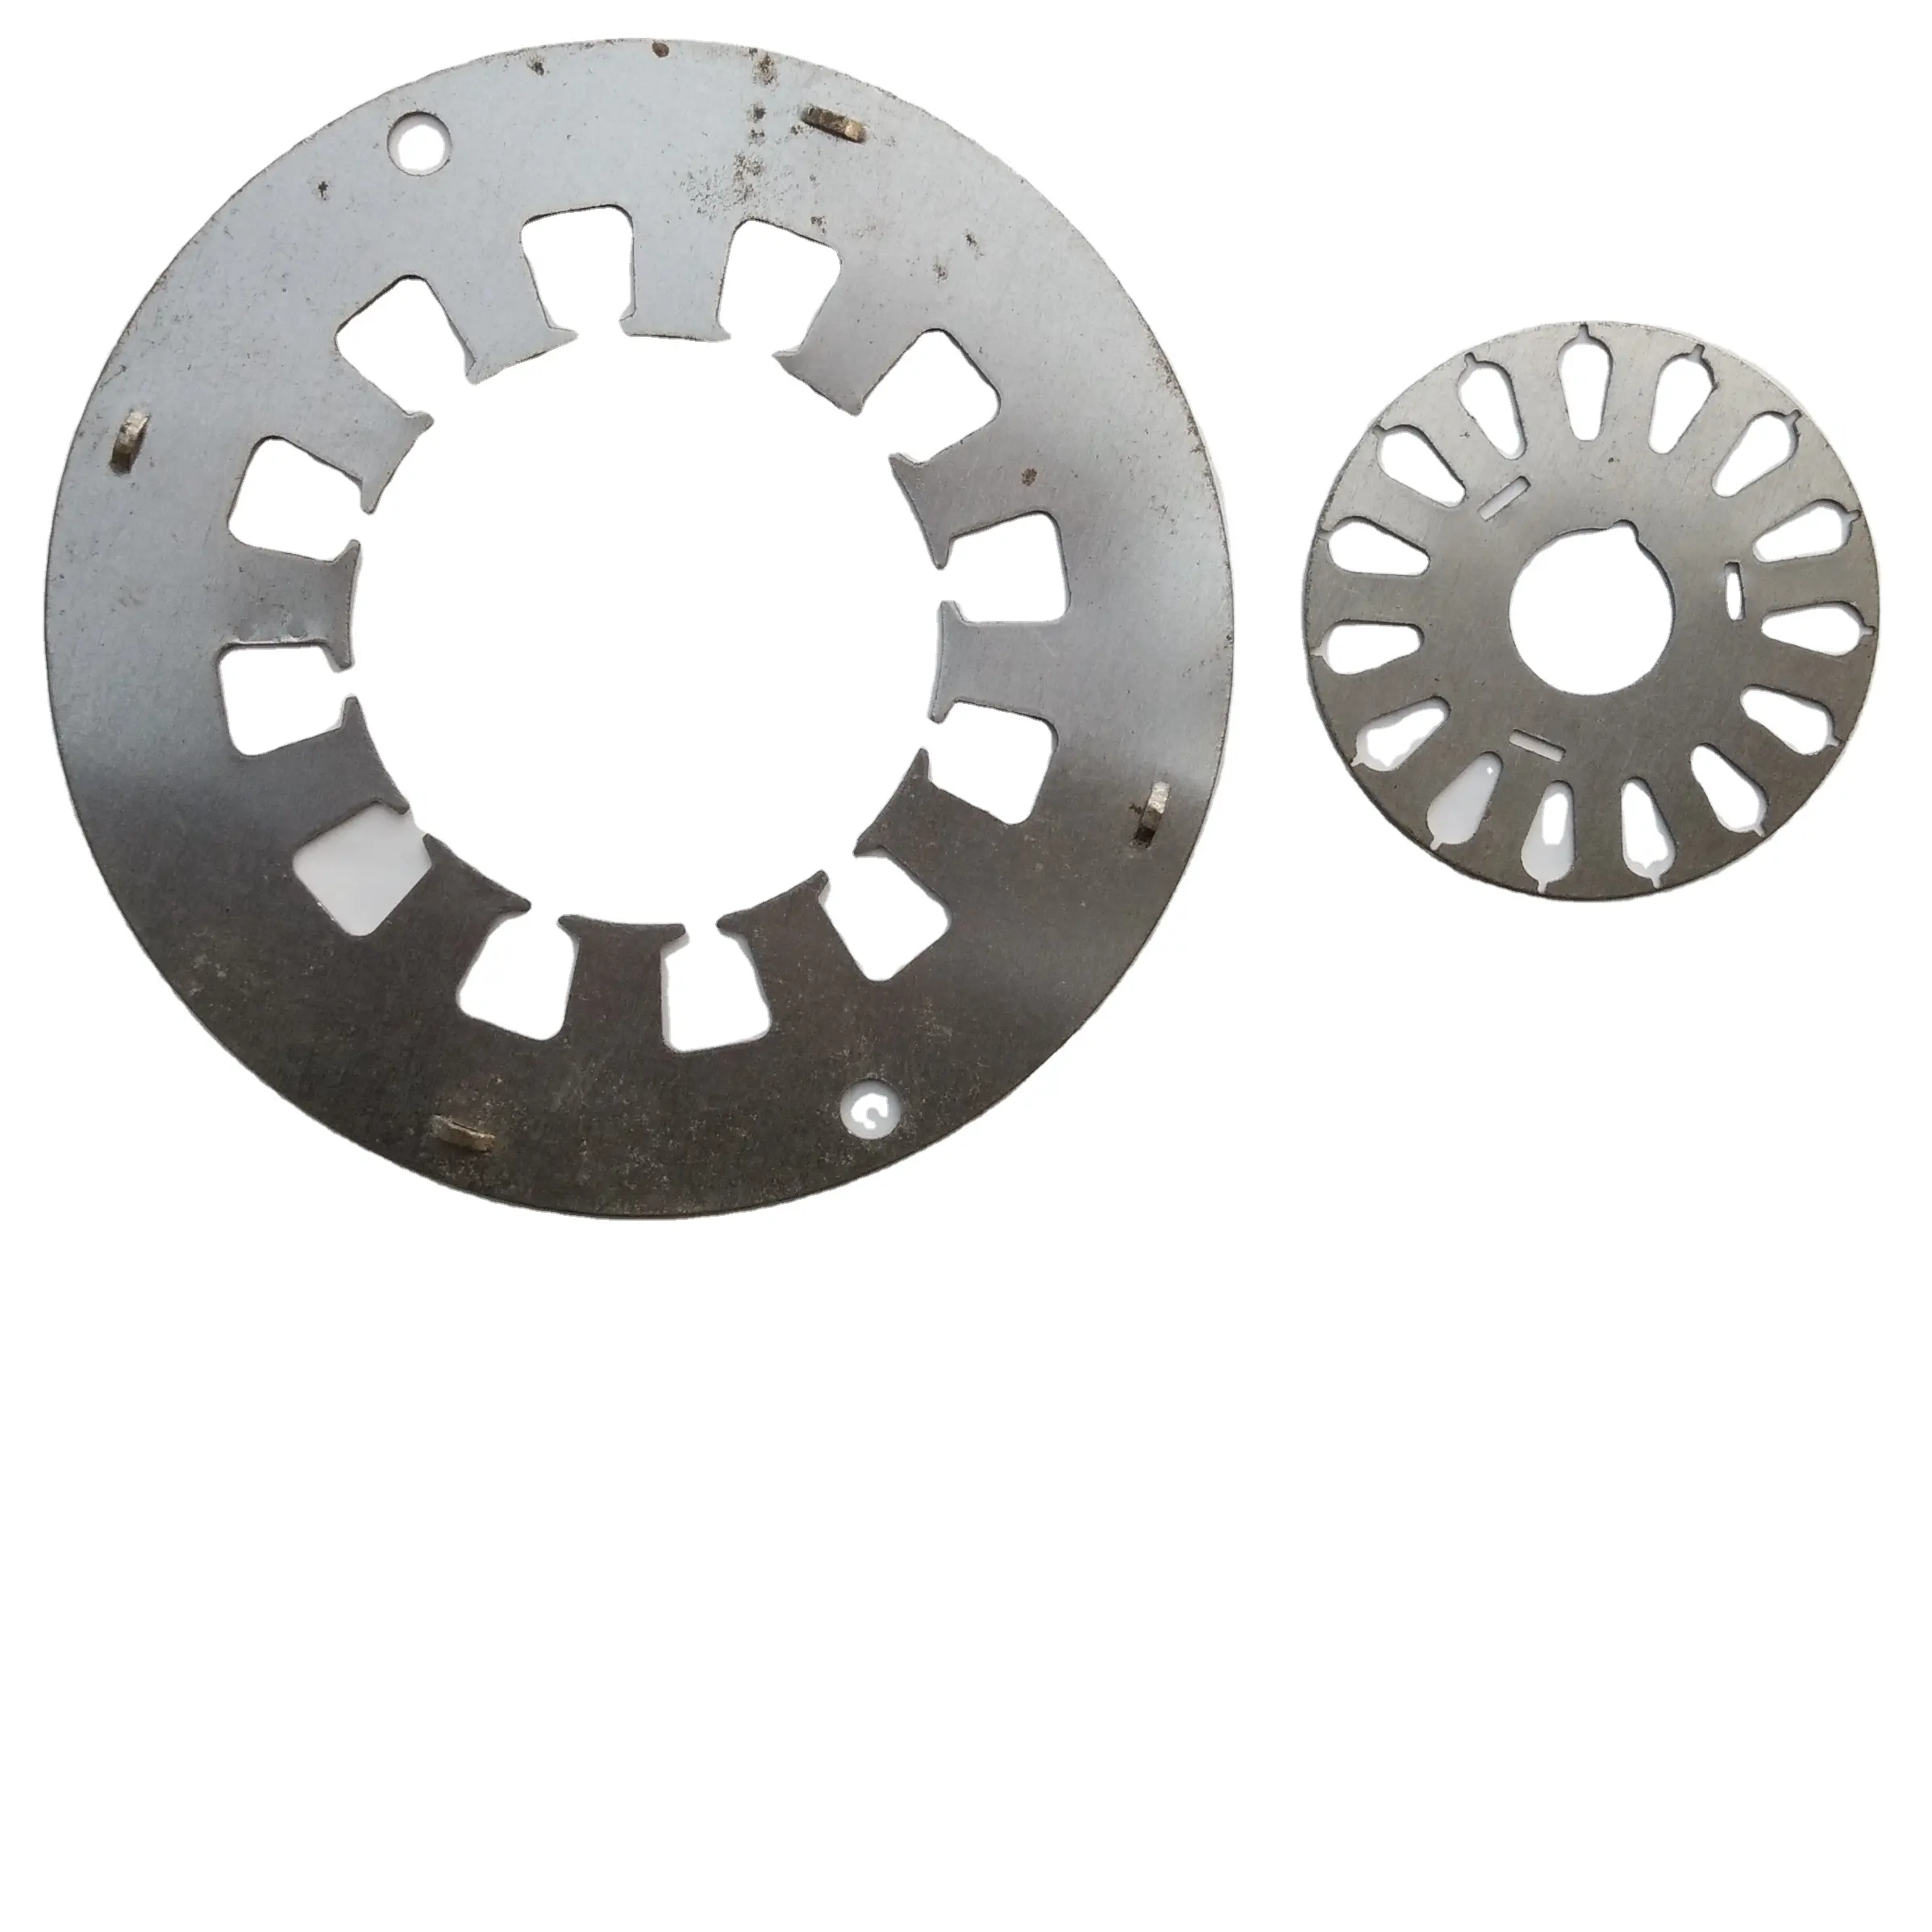 Động cơ phụ kiện các nhà sản xuất trực tiếp bán động cơ Stator lõi và rotor động cơ lõi chế biến Stator lõi sắt đấm